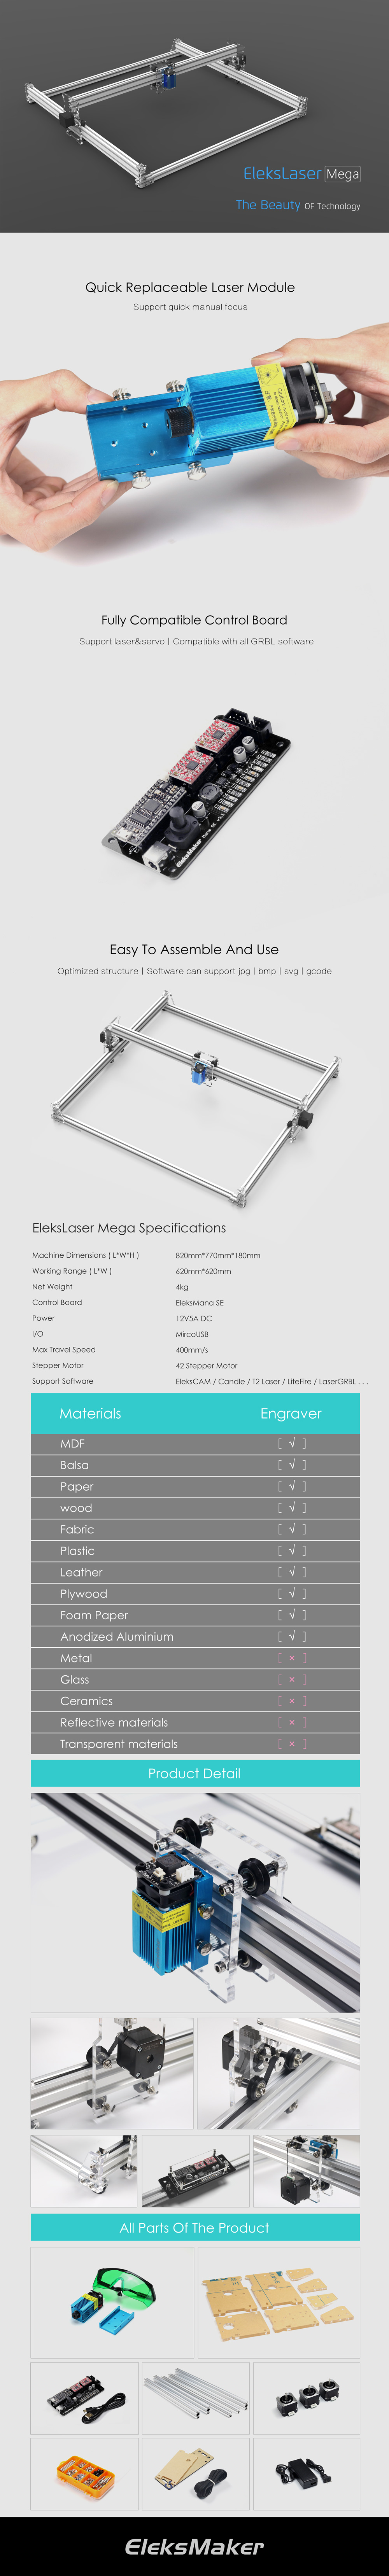 EleksMaker® EleksLaser-Mega 500mW/1600mW/2500mW Laser Engraving Machine CNC Laser Printer 25